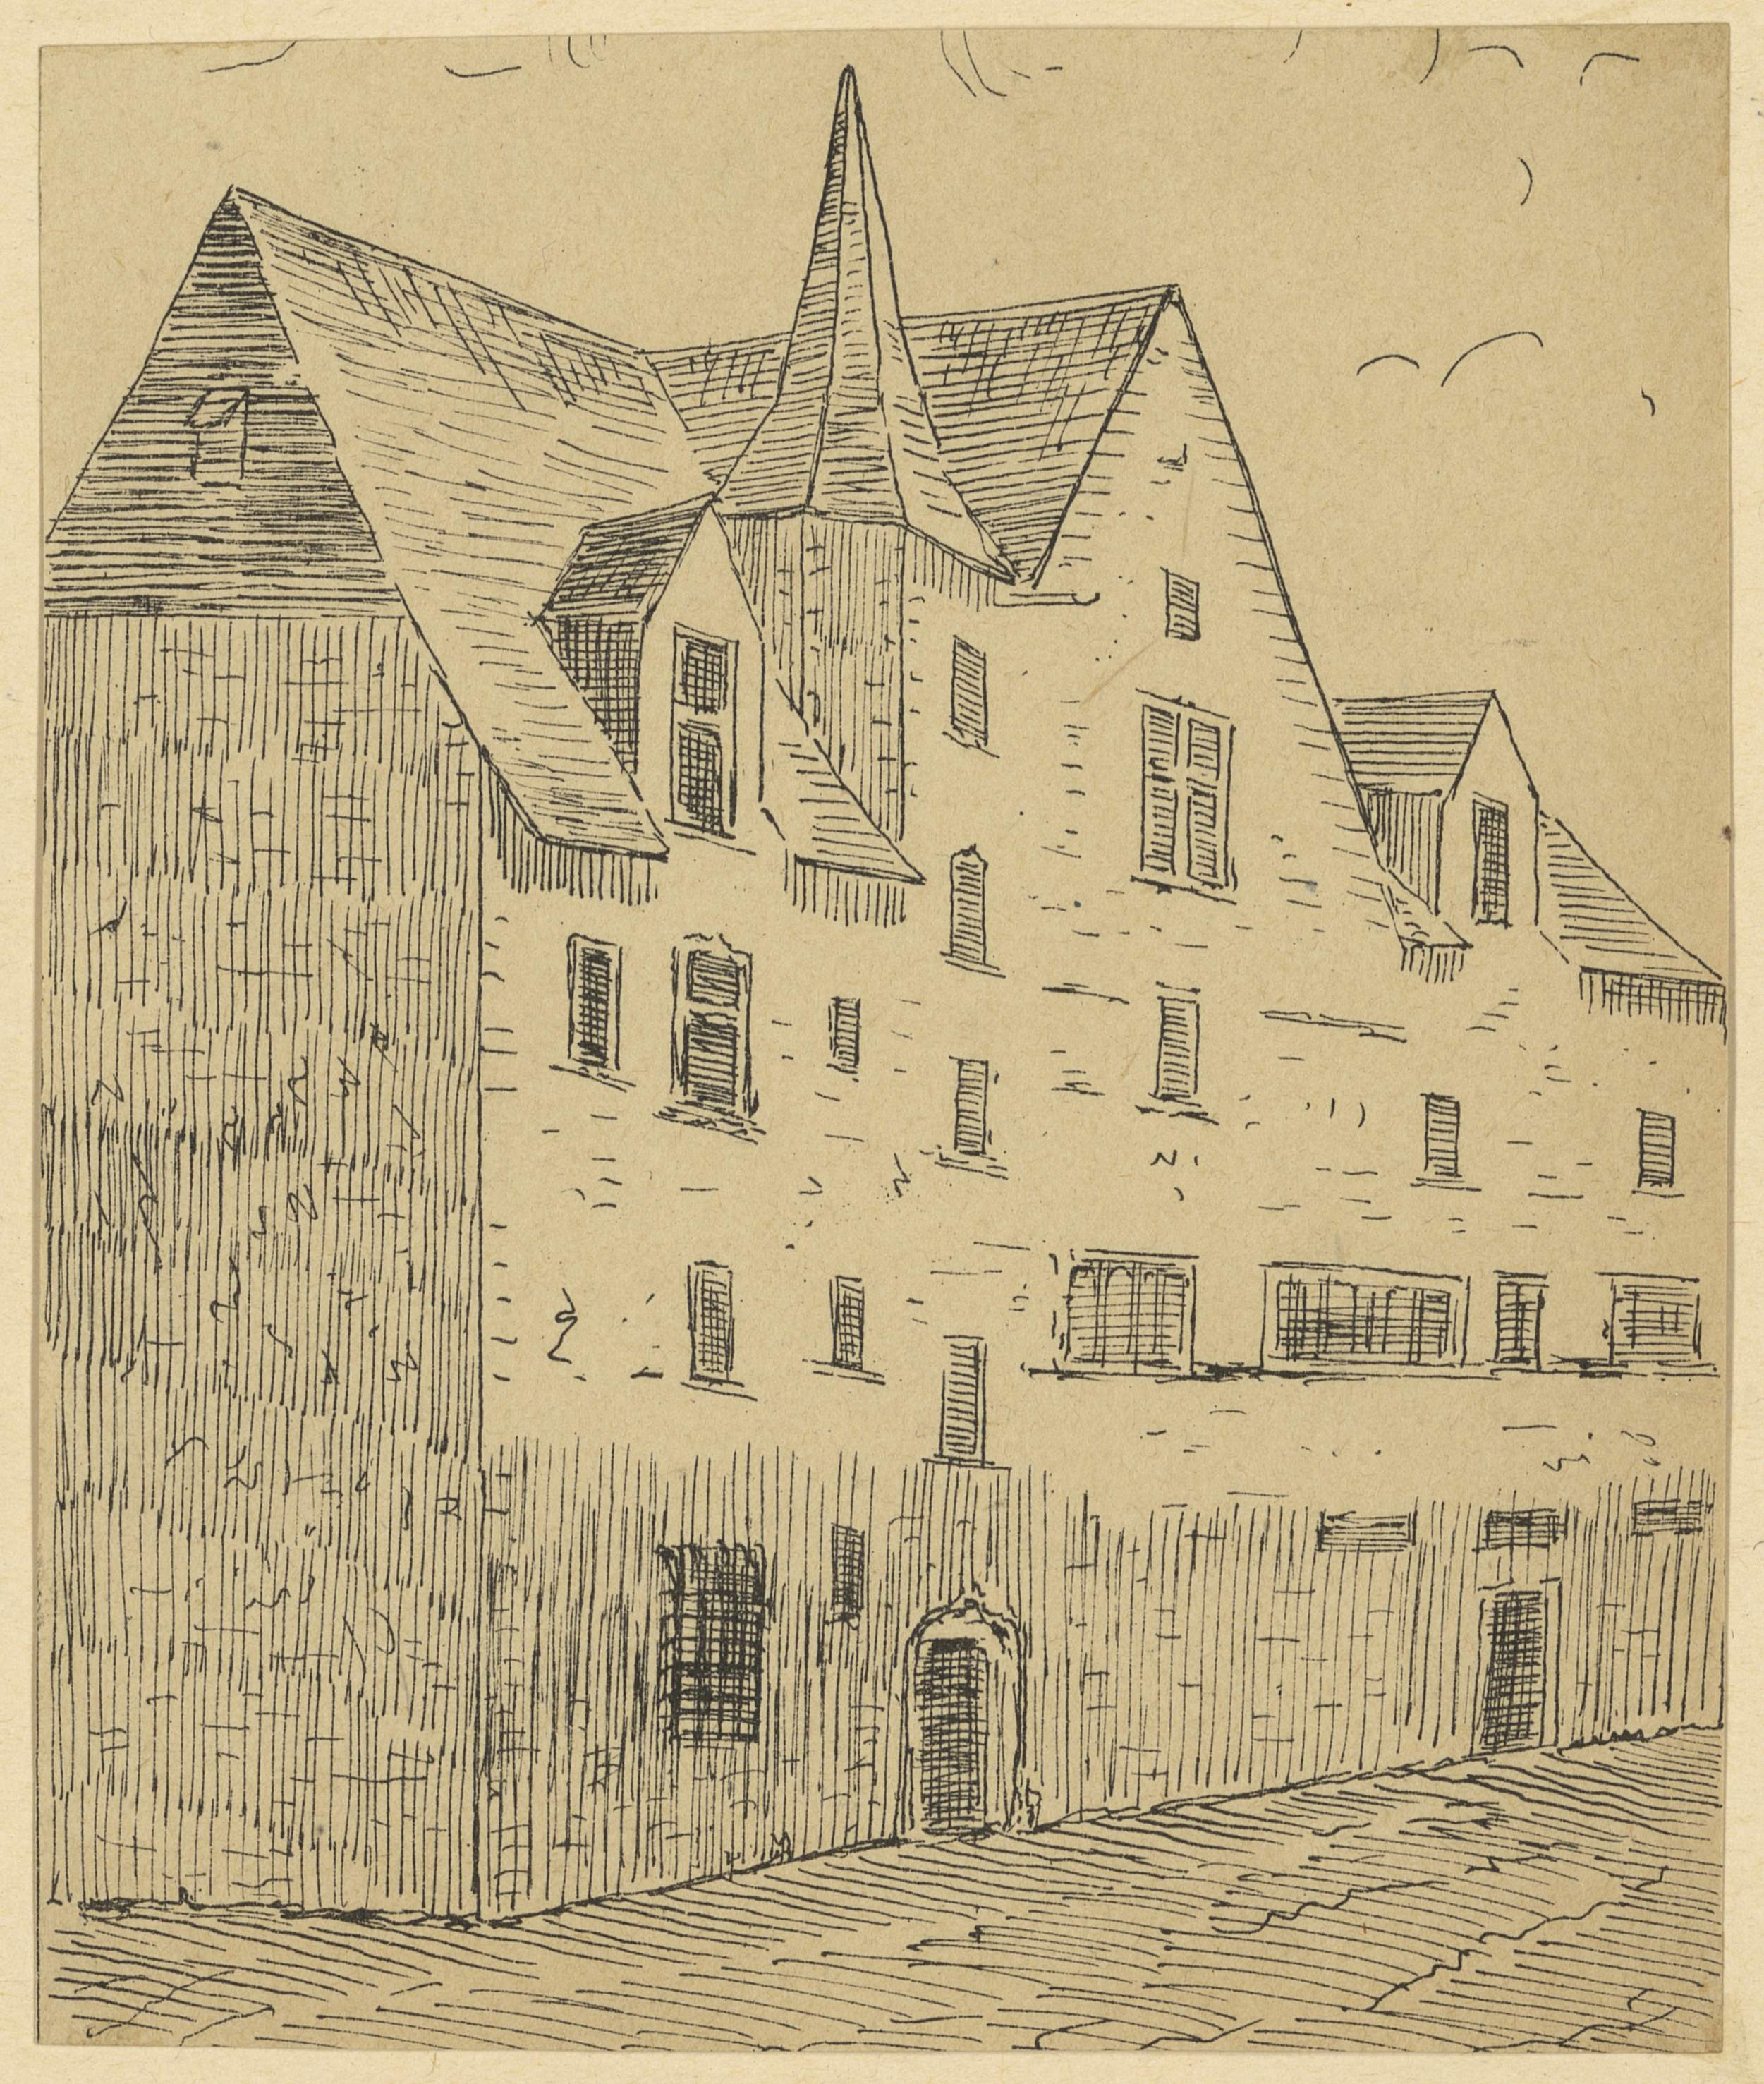 Anonyme, Blois, La greneterie de Marmoutier, rue Robert-Houdin, dessin à la plume vers 1880